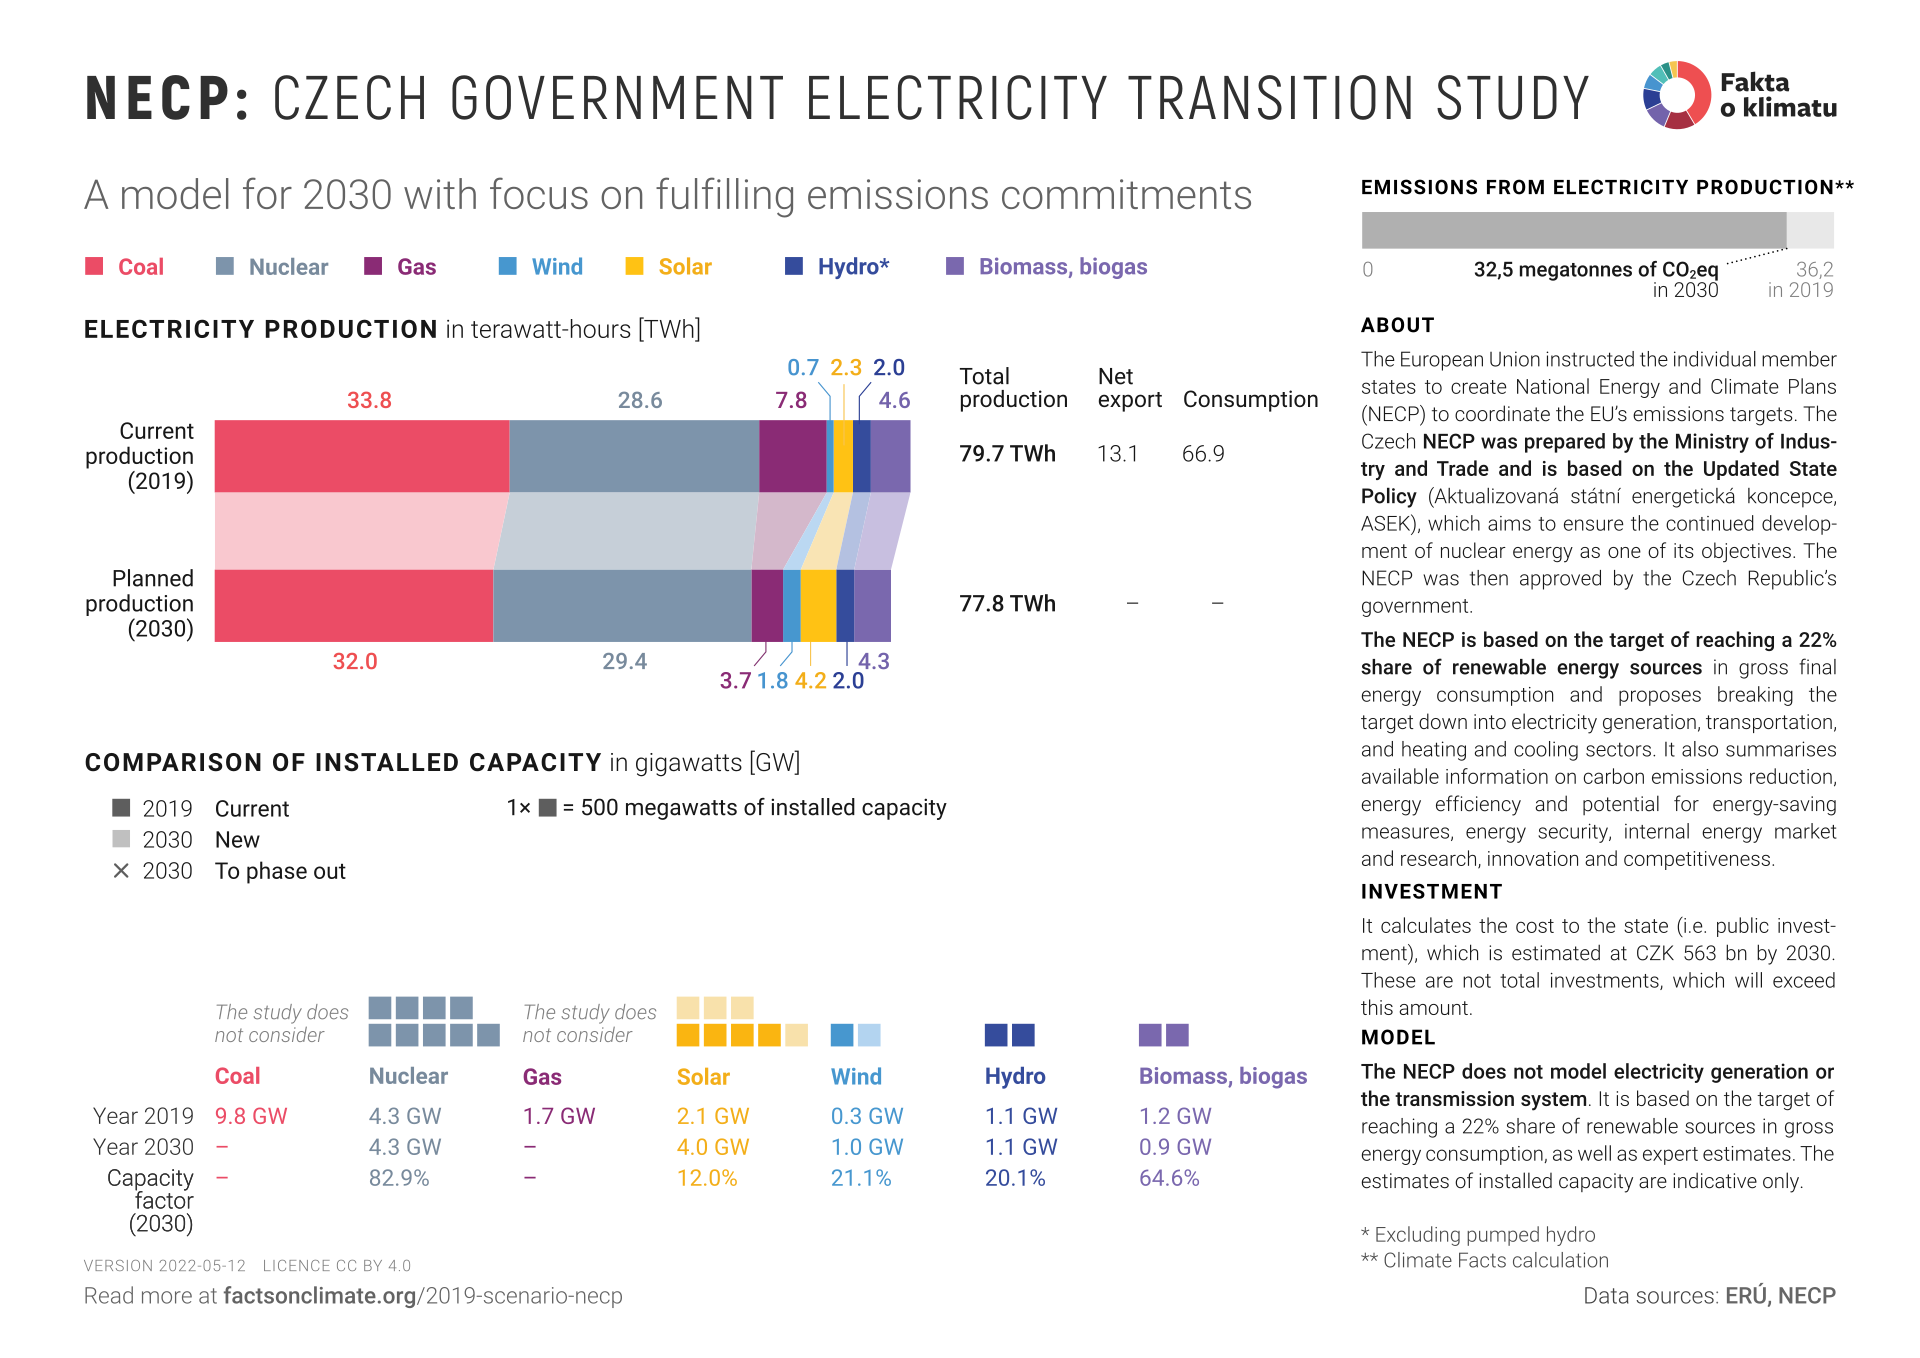 NECP: Czech electricity transition study